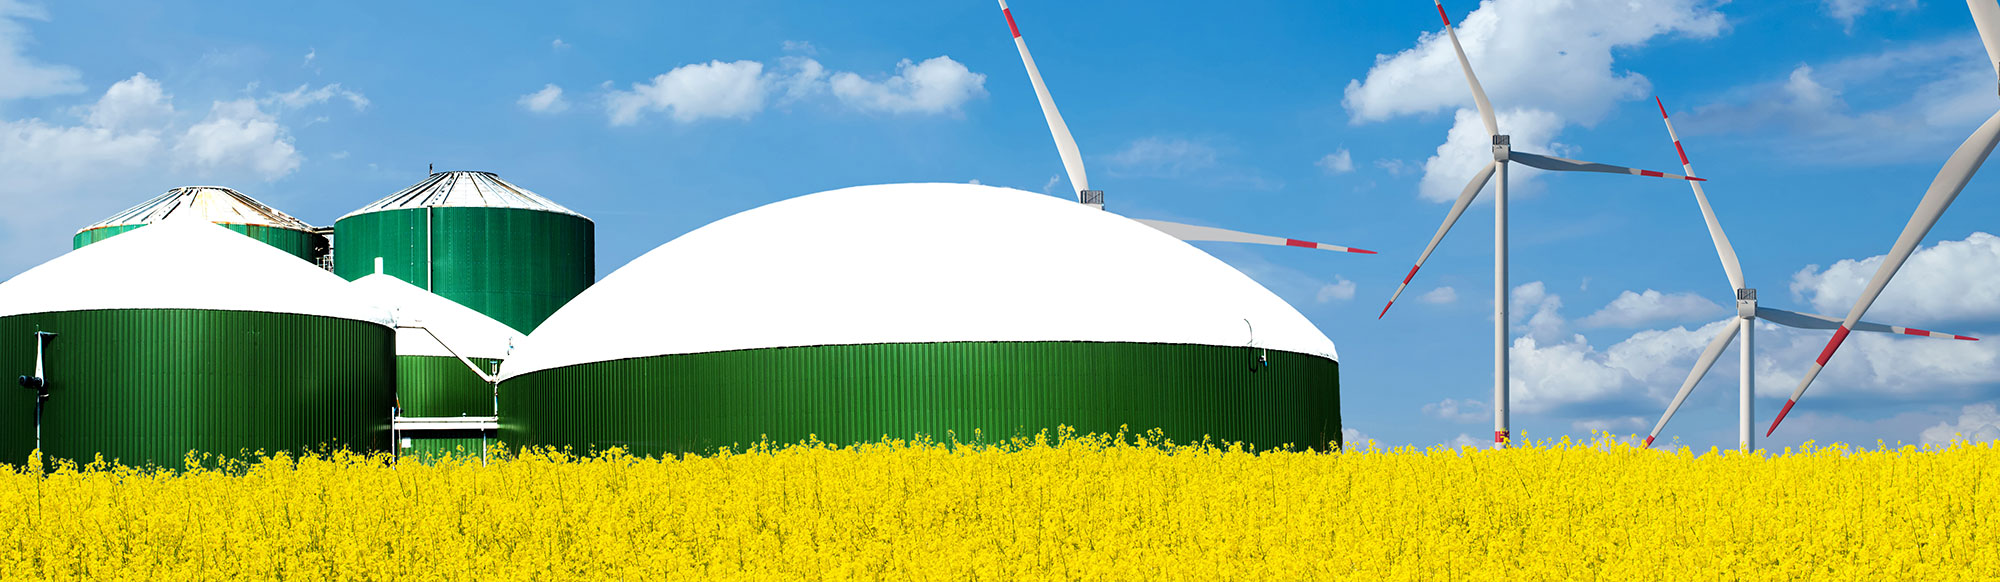 Foto på en biogasanläggning. I förgrunden gult rapsfält och i bakgrunden vindkraftverk mot blå himmel.